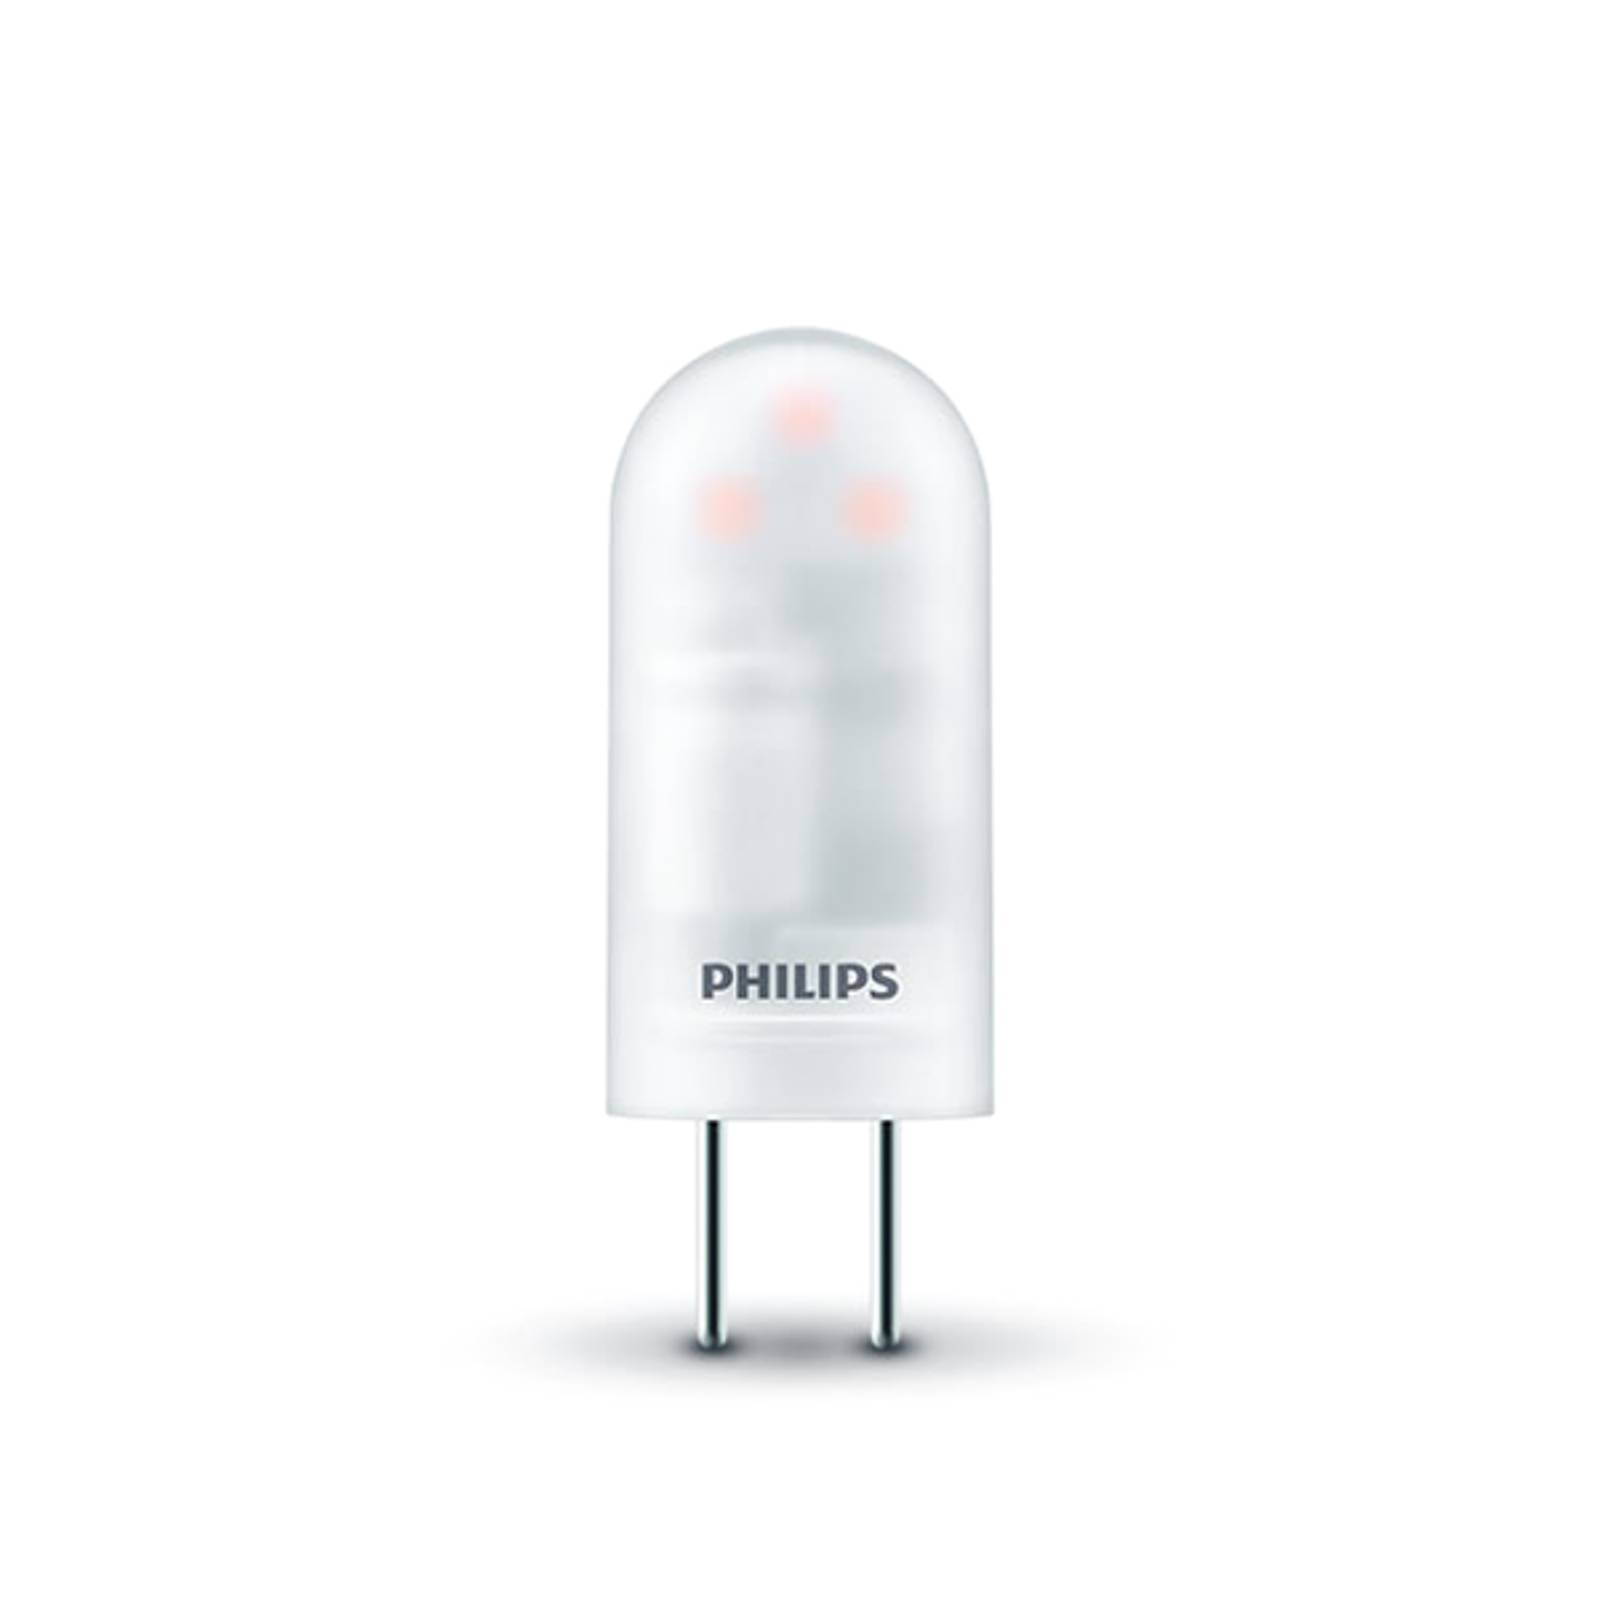 Philips Philips GY6.35 LED pinová žárovka 1,8W 2700K